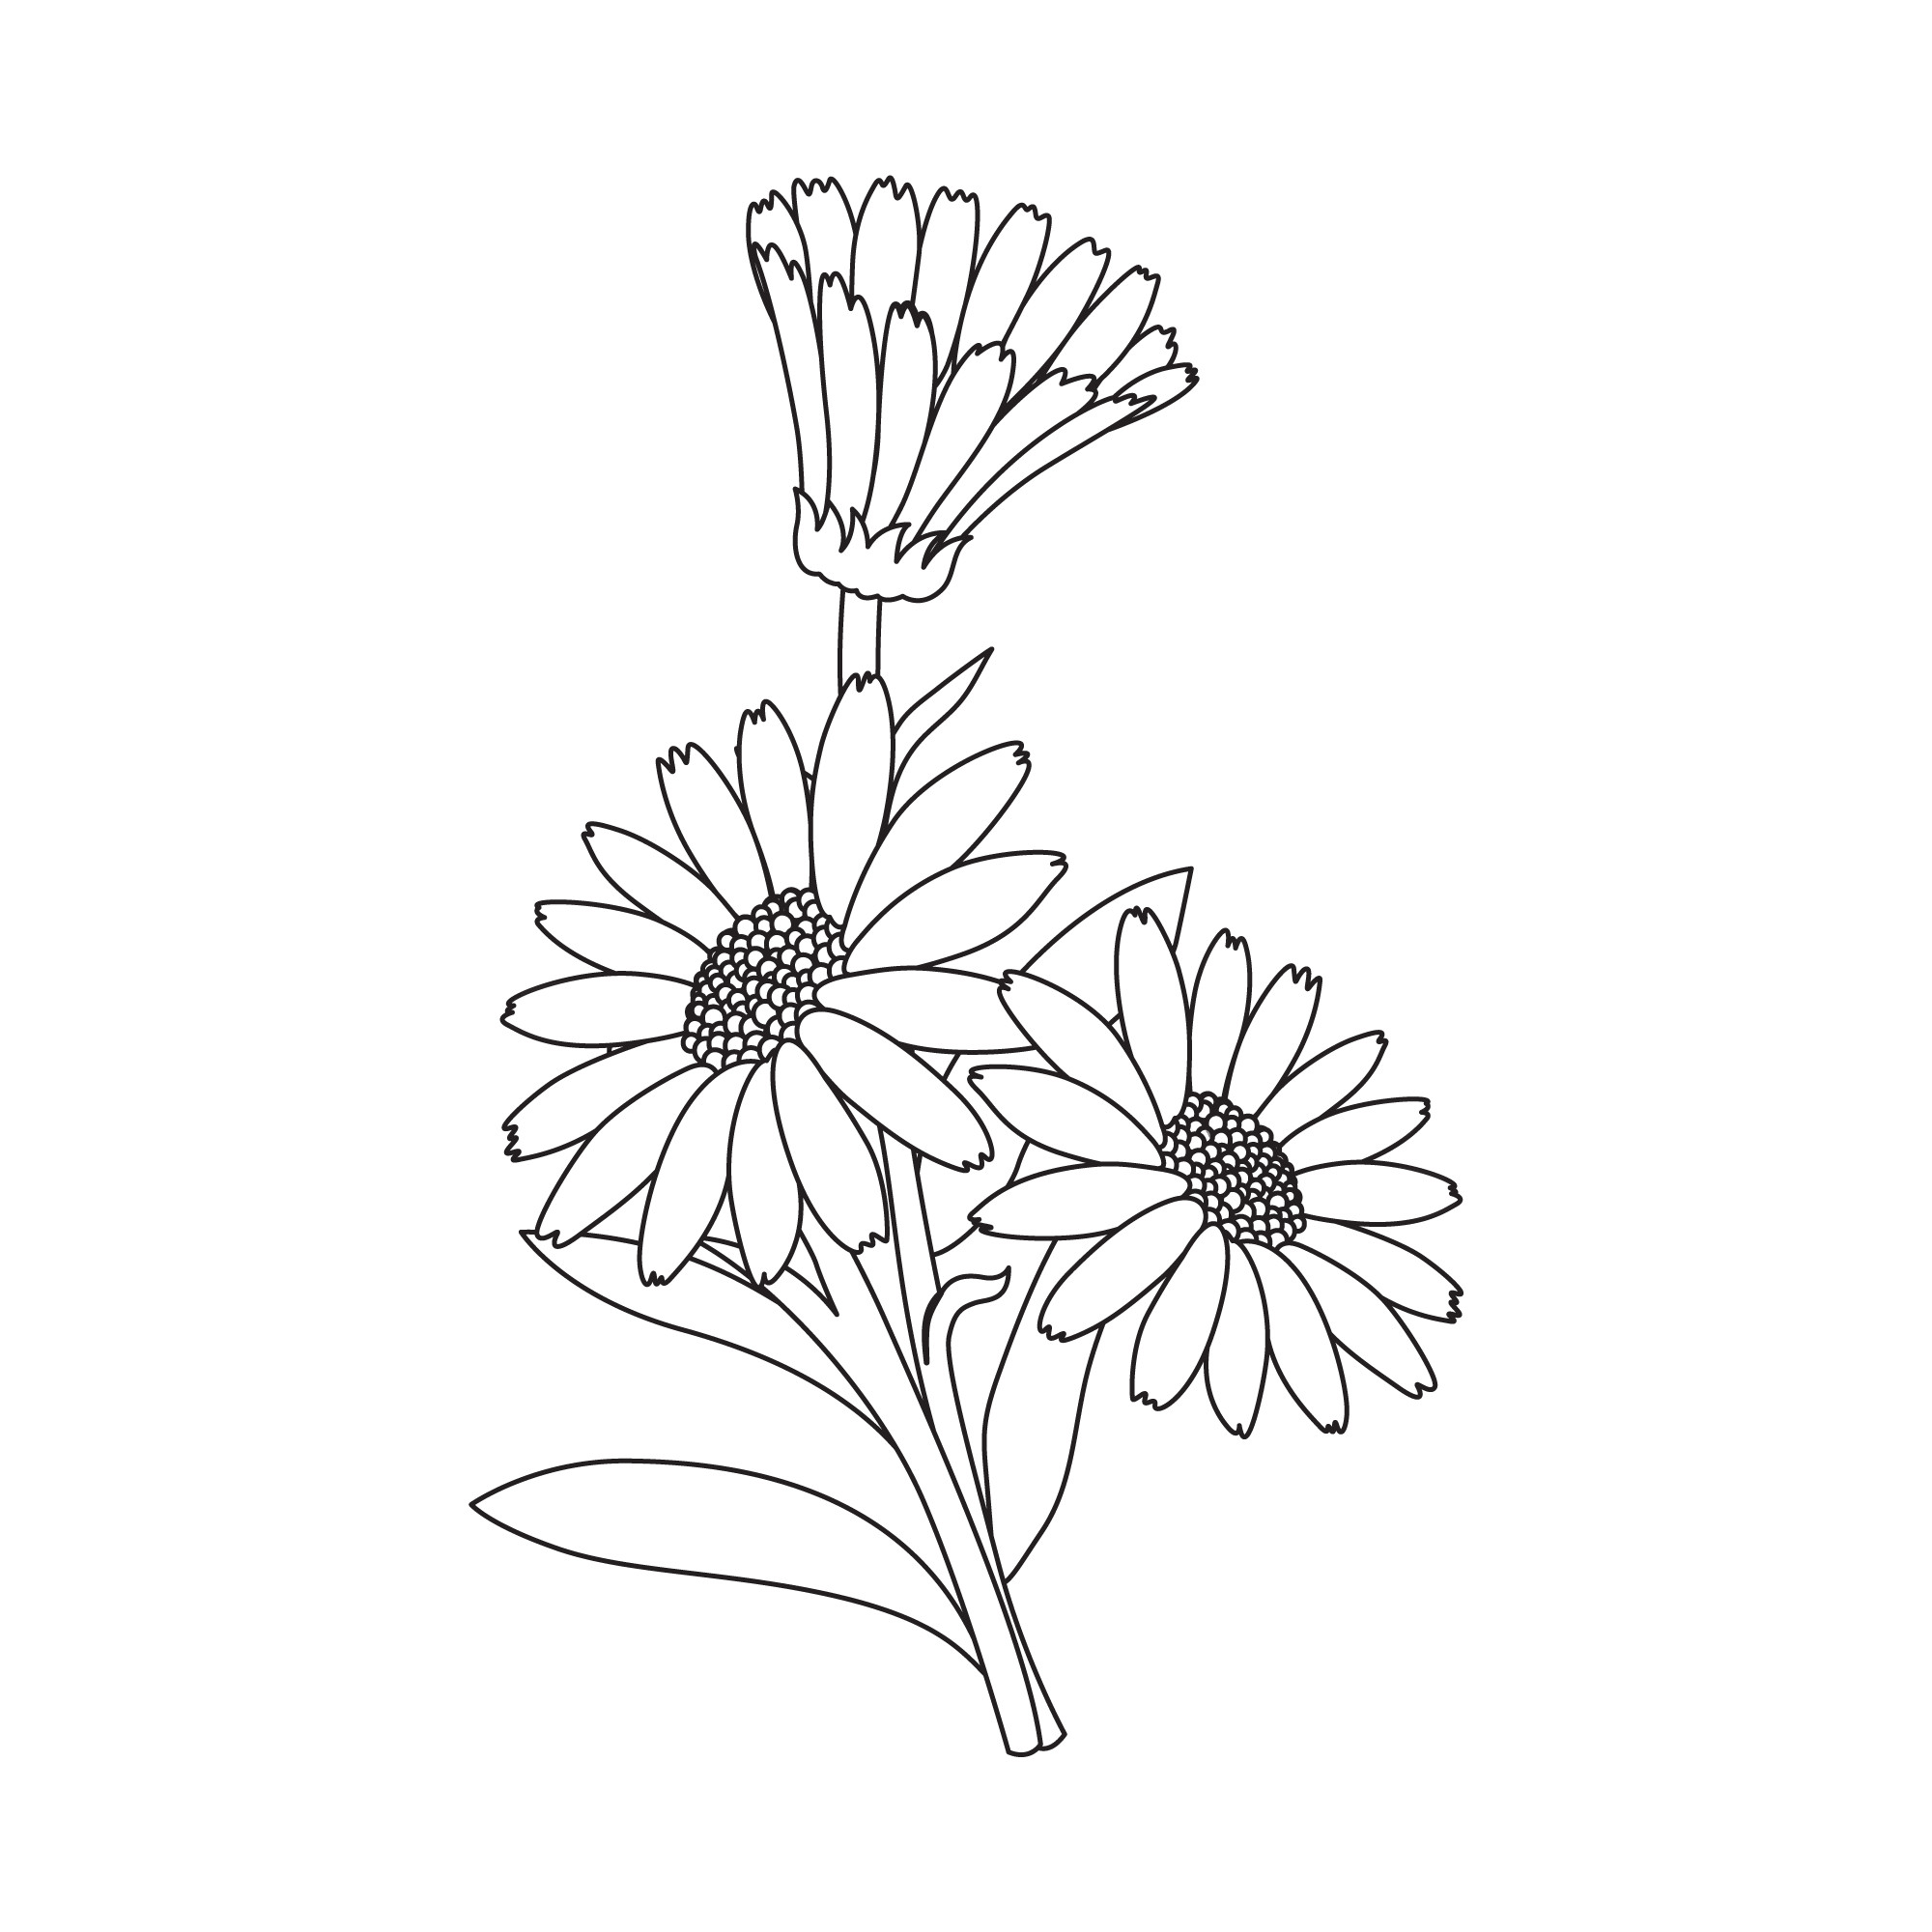 Раскраска для детей: полевой цветок с лепестками